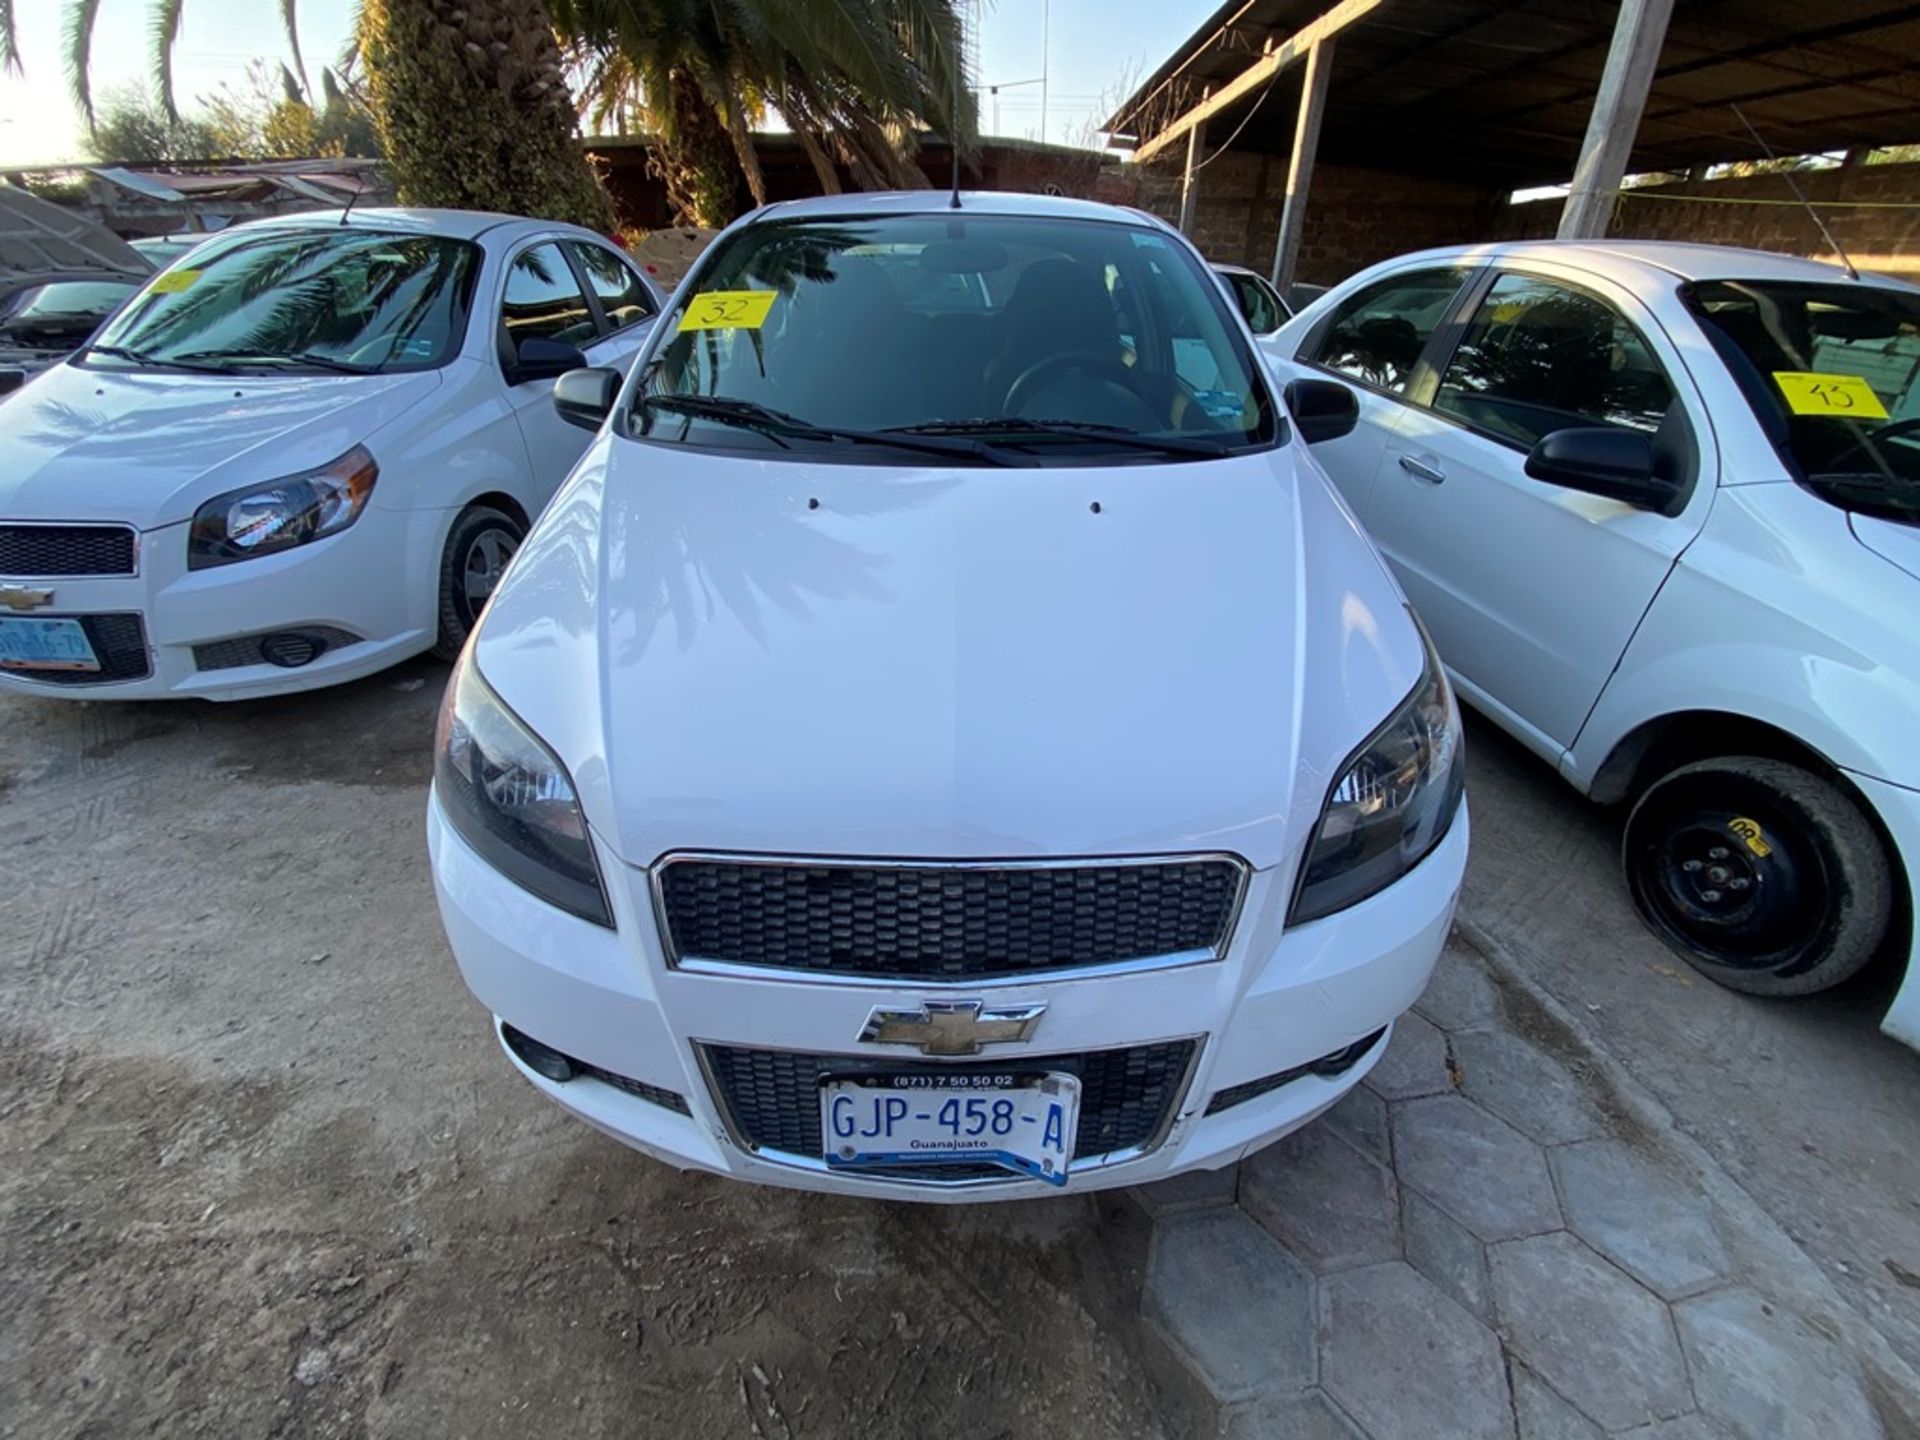 Vehículo marca Chevrolet tipo Aveo, modelo 2017, número de serie 3G1TB5CF2HL116537 - Image 2 of 15